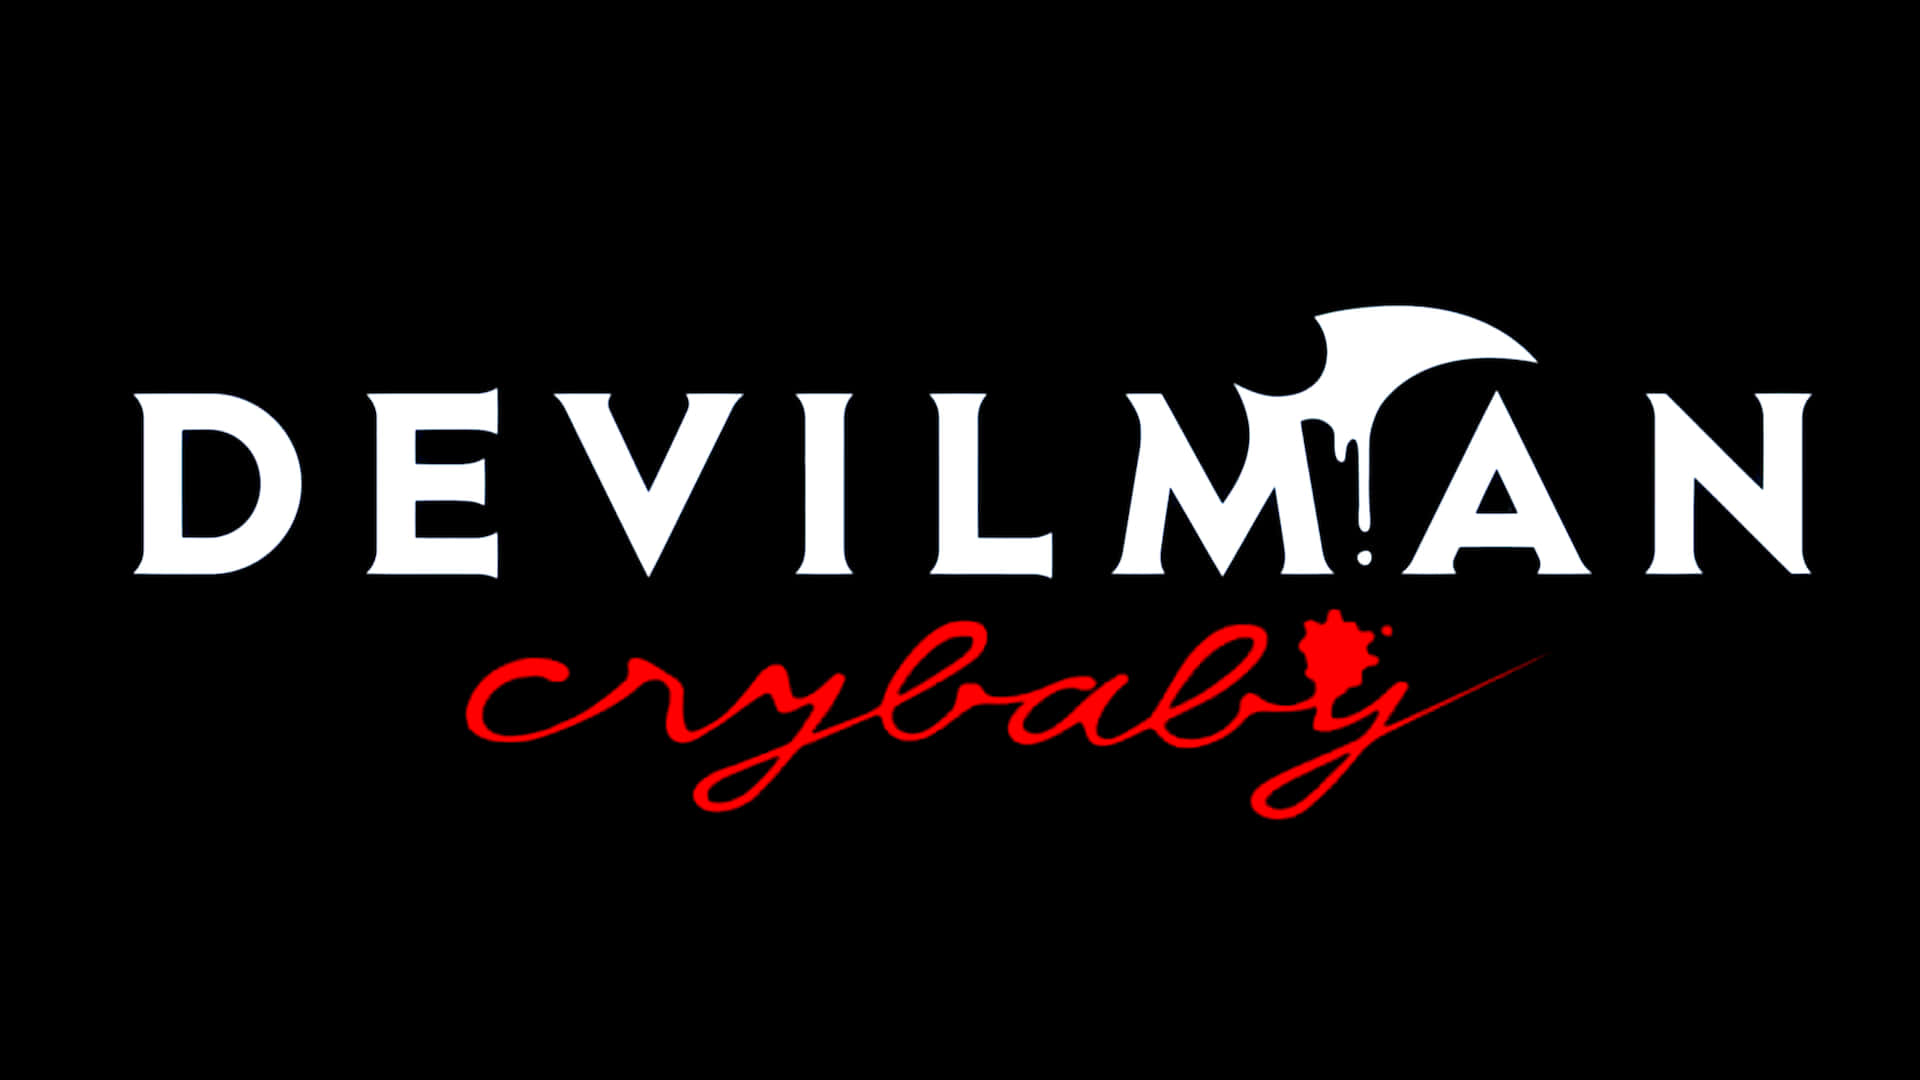 Enscen Från Den Mörka Och Intensiva Animeserien Devilman Crybaby.